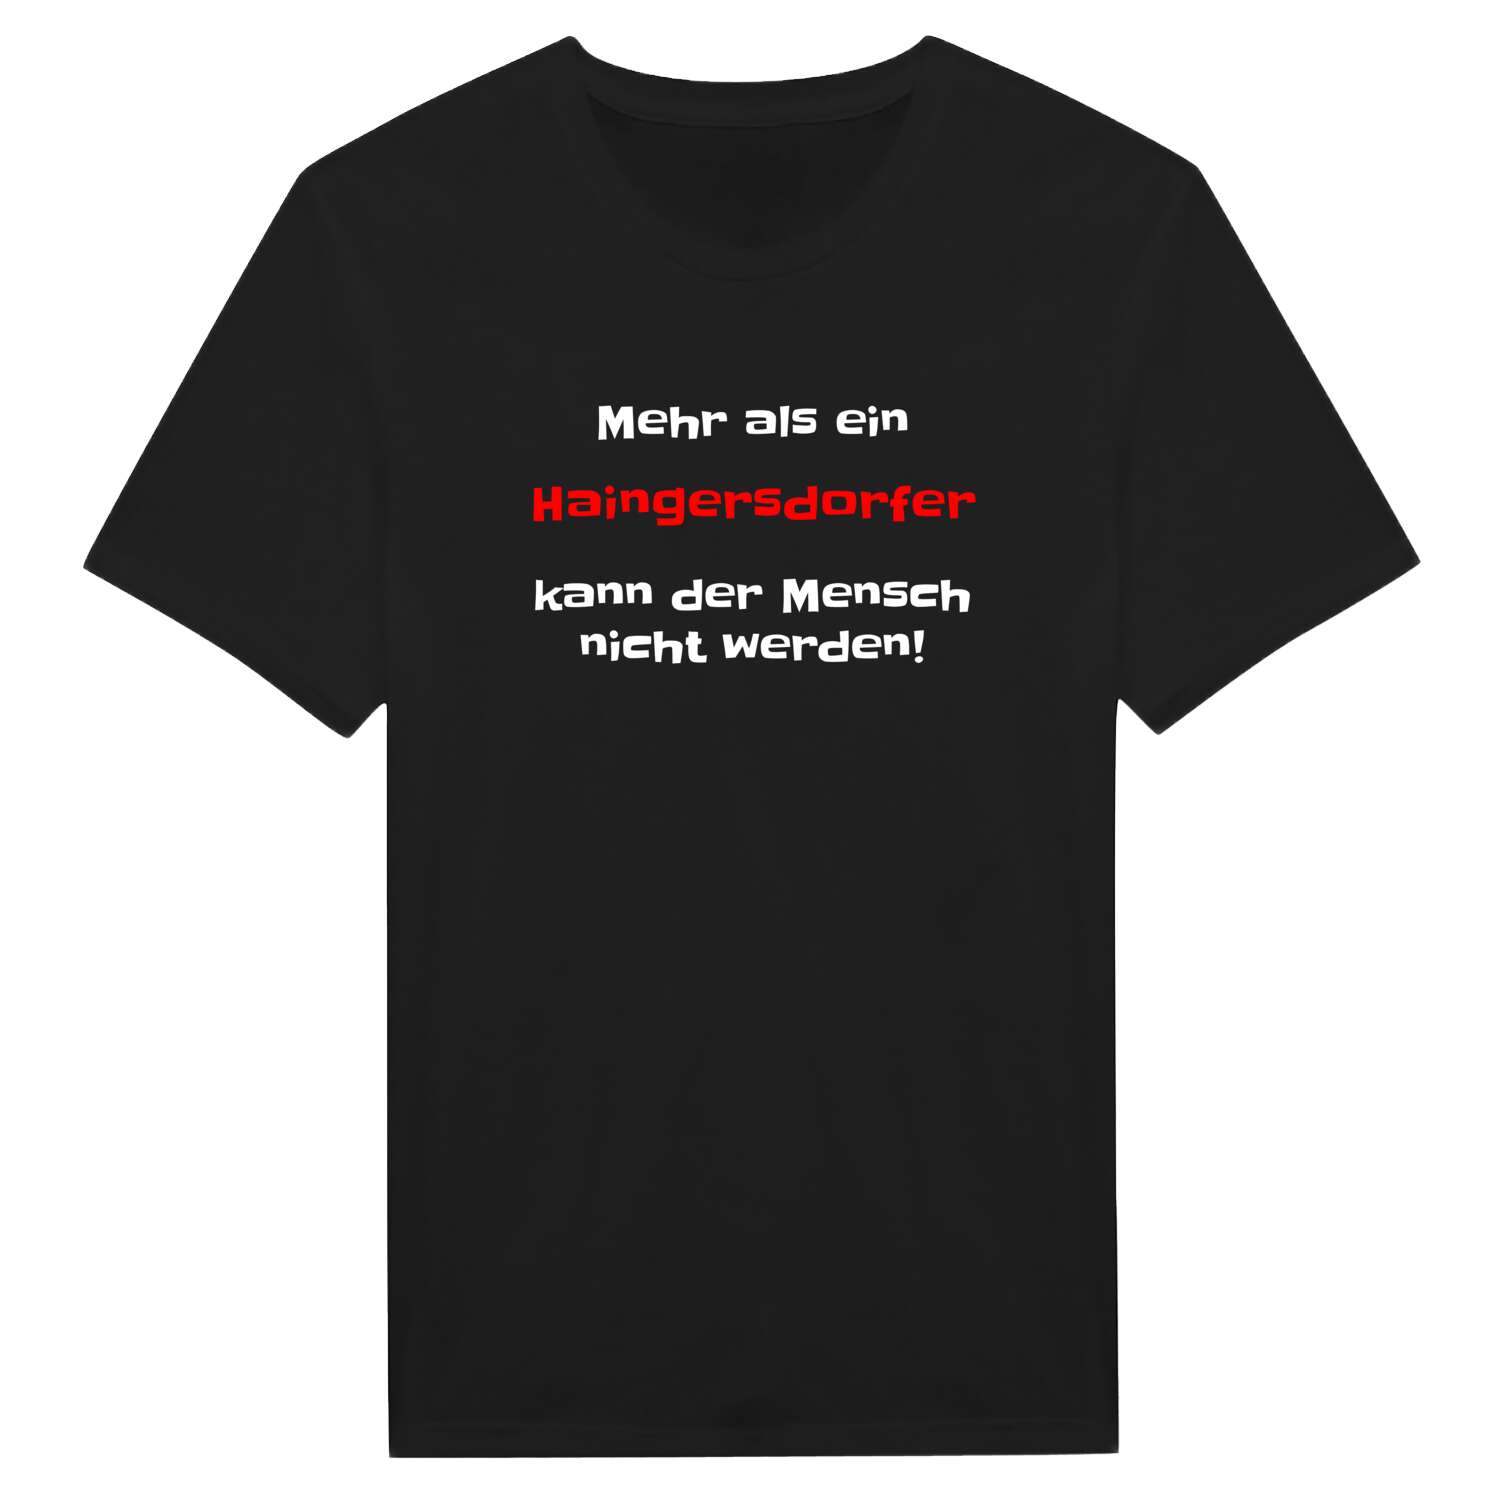 Haingersdorf T-Shirt »Mehr als ein«